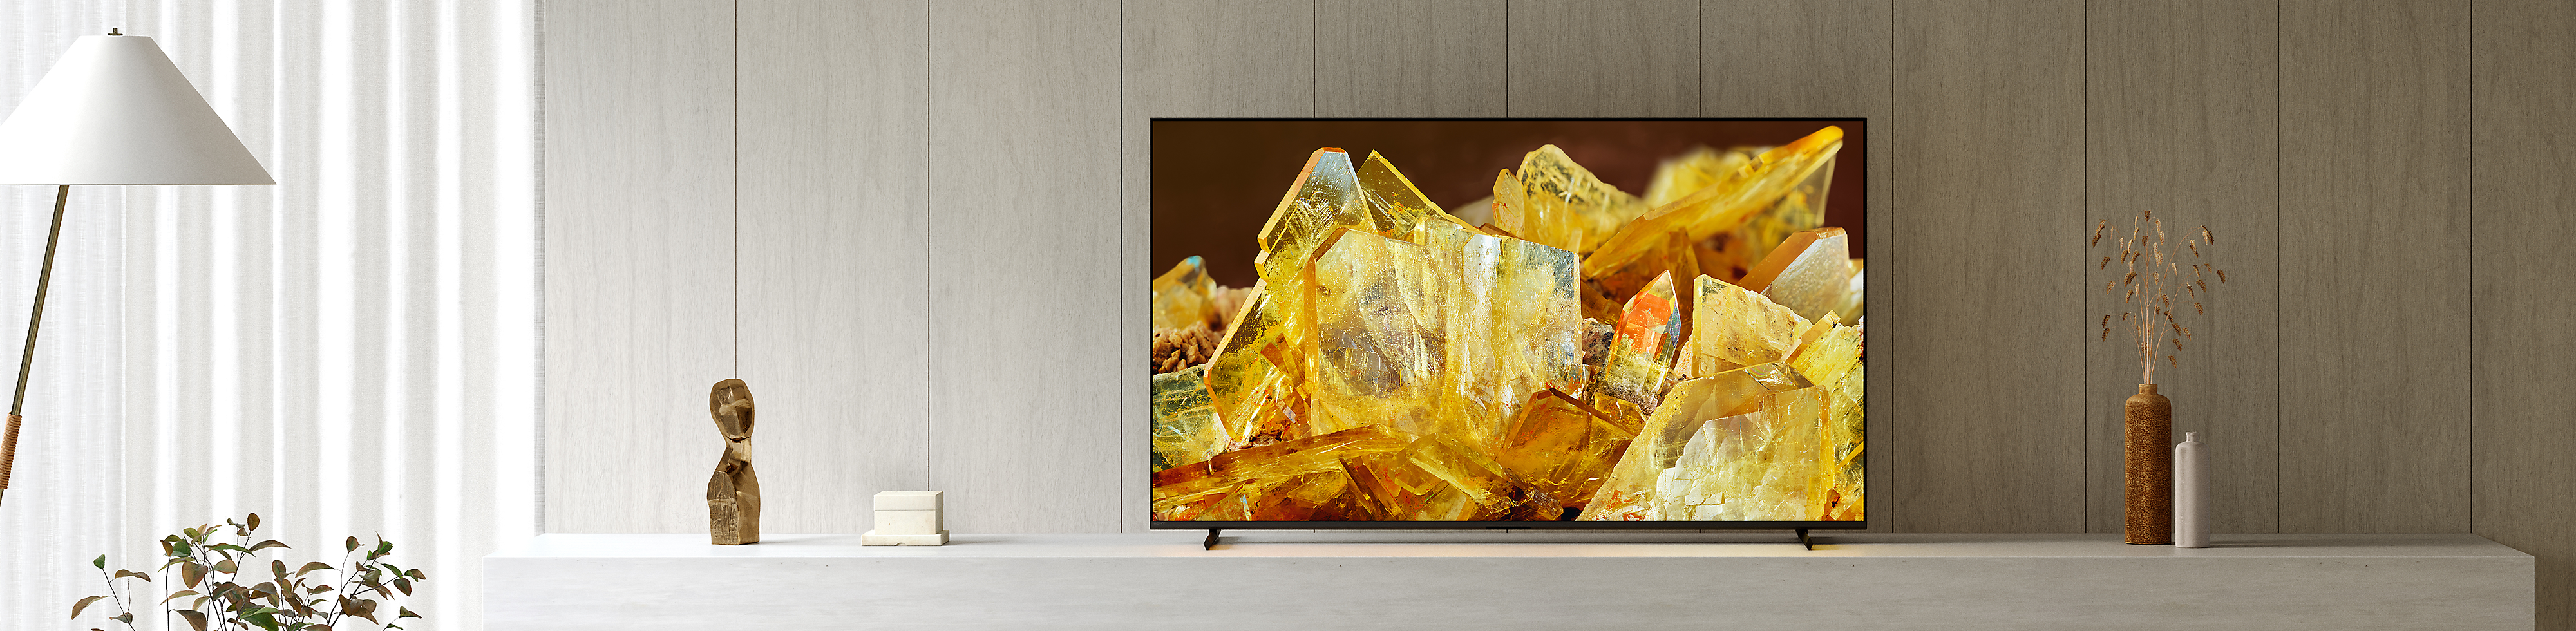 TV BRAVIA XR in un salotto, con immagine in primo piano di cristalli color ambra sullo schermo